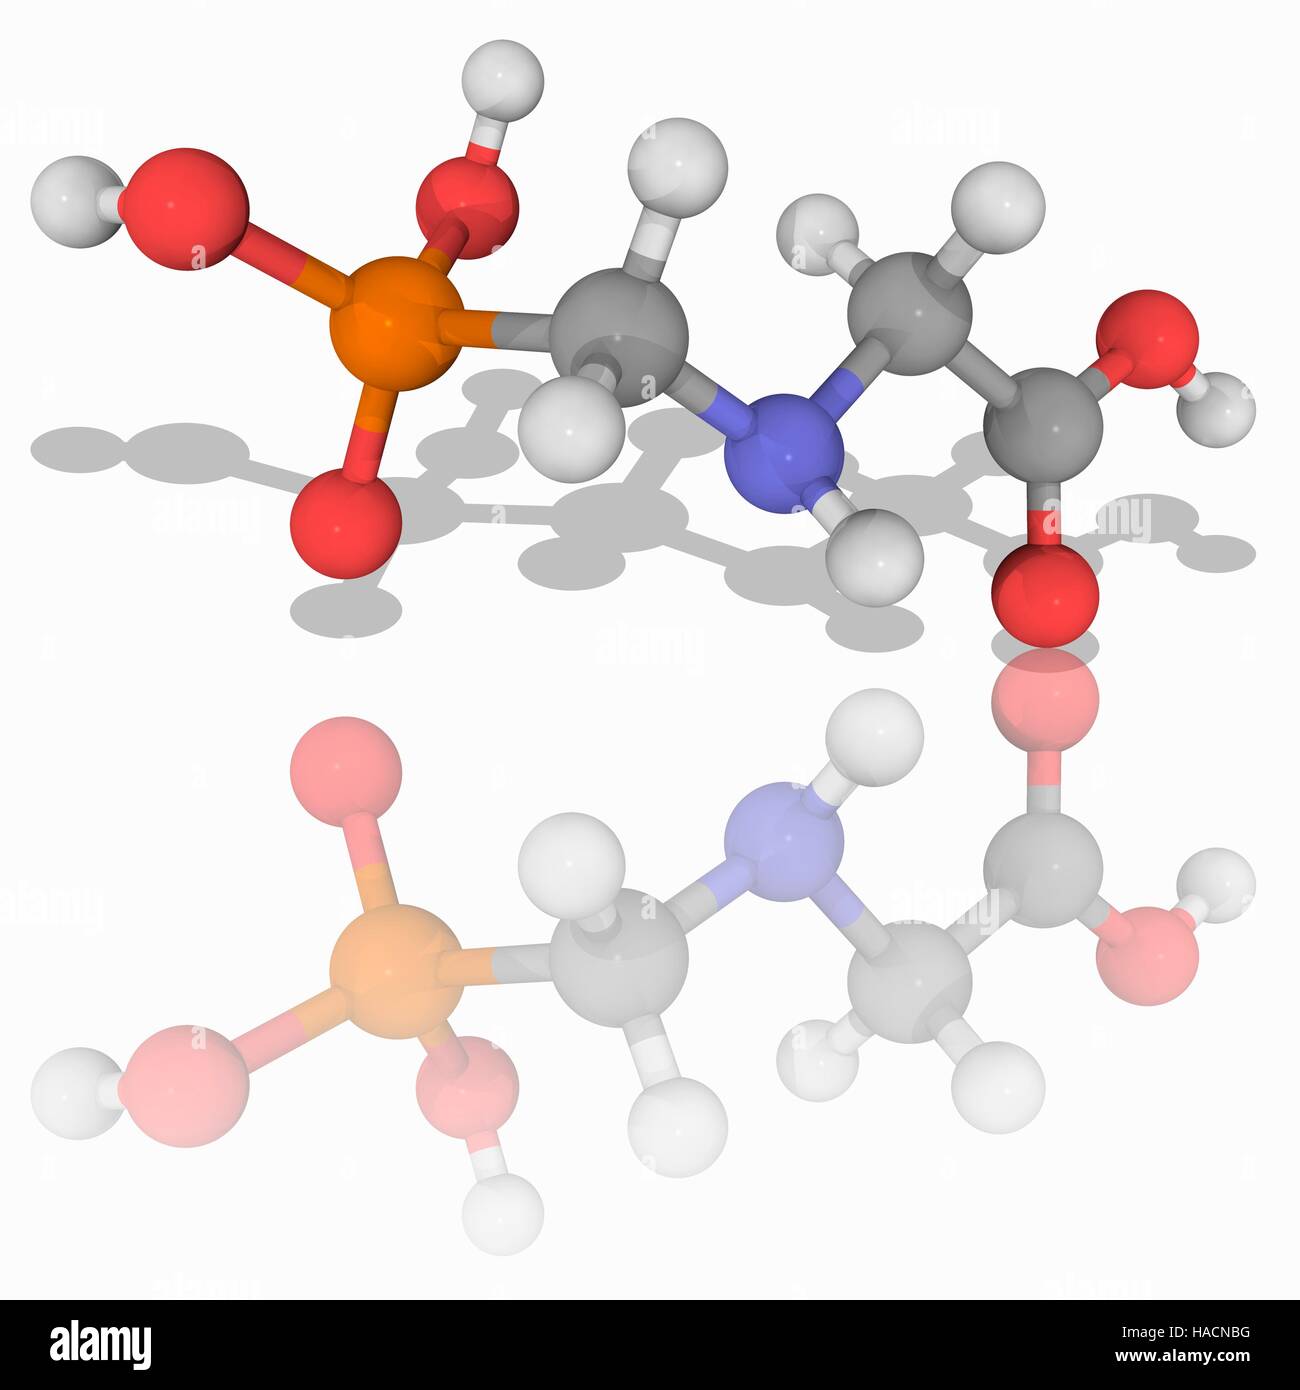 Glyphosat. Molekülmodell von Unkrautvernichter Glyphosat (C3. H8. N.O5. (P), ein Ausgedehntspektrum Herbizid. Atome als Kugeln dargestellt werden und sind farblich gekennzeichnet: Kohlenstoff (grau), Wasserstoff (weiß), Stickstoff (blau), Sauerstoff (rot) und Phosphor (Orange). Abbildung. Stockfoto